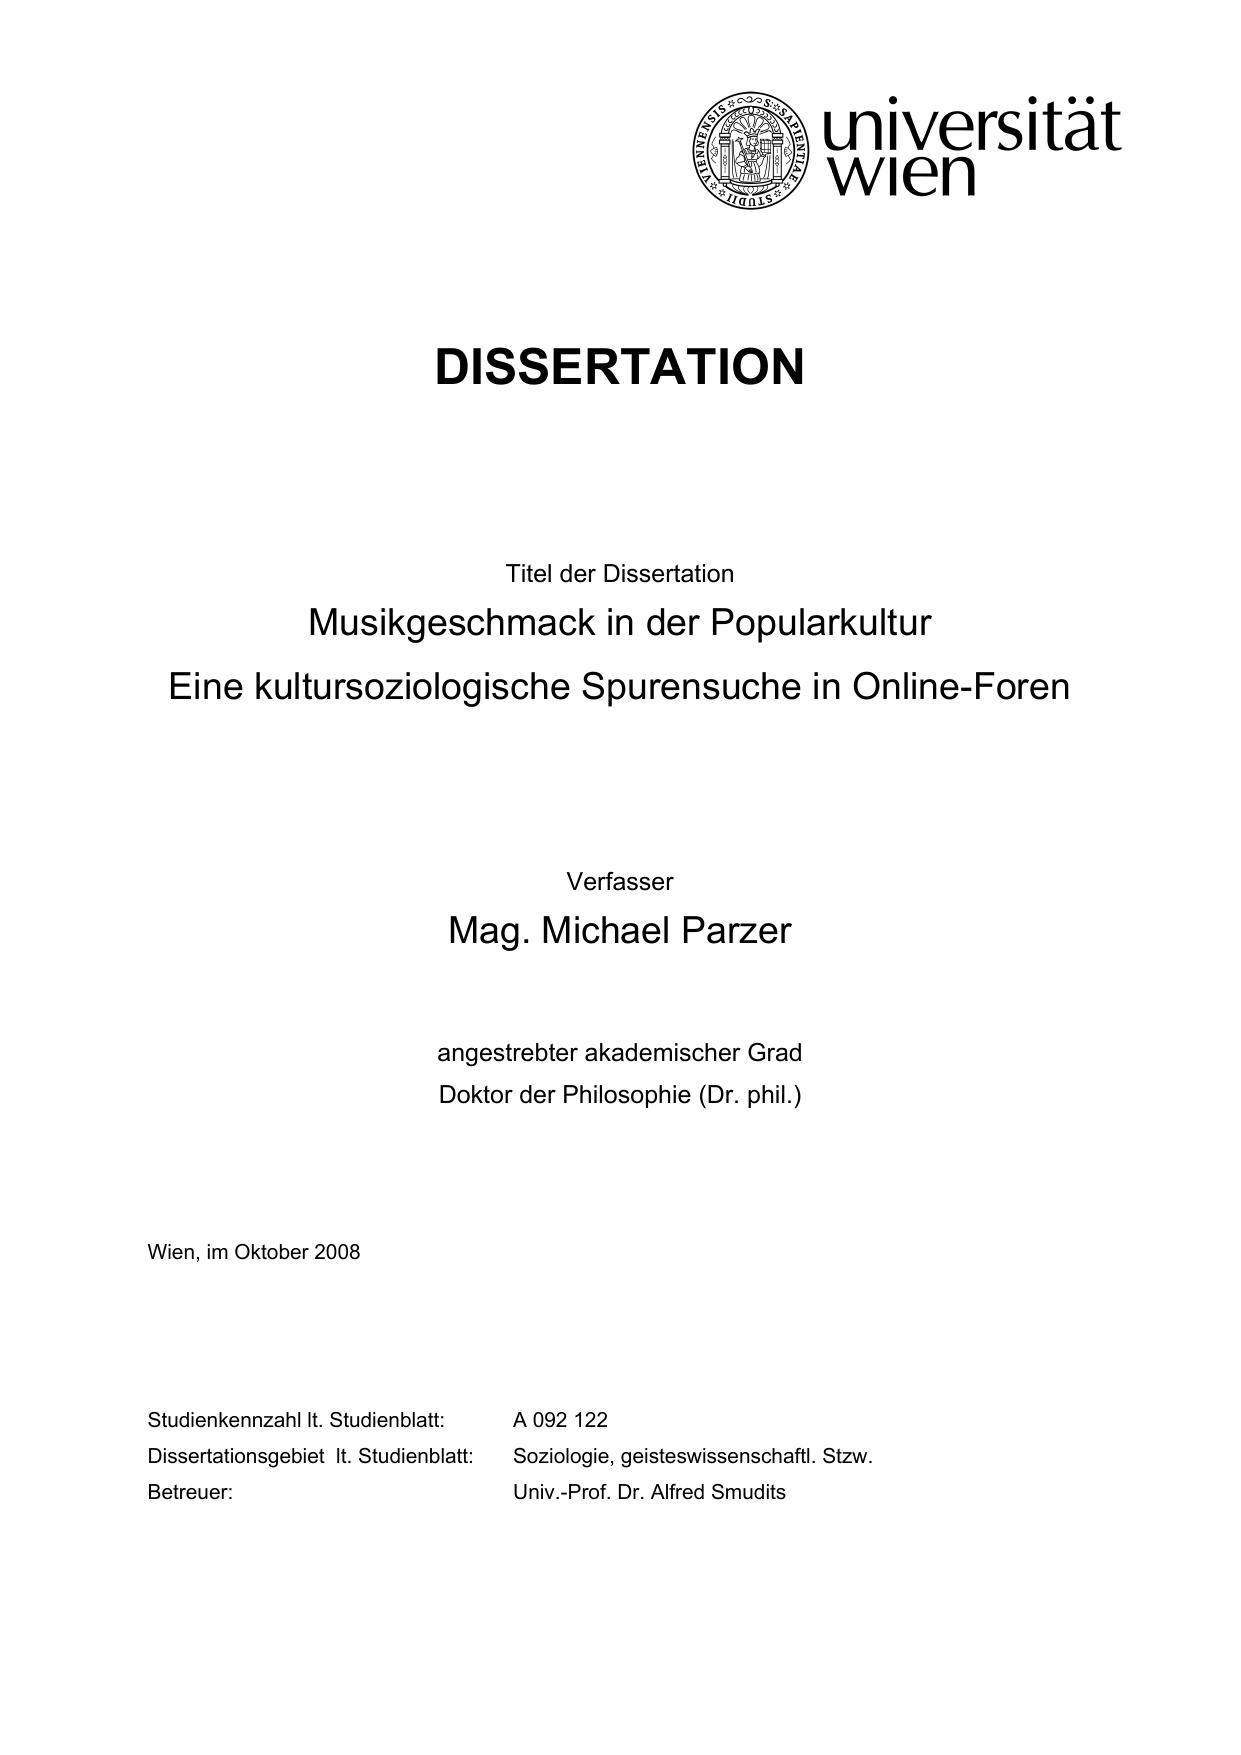 Online dissertation definition